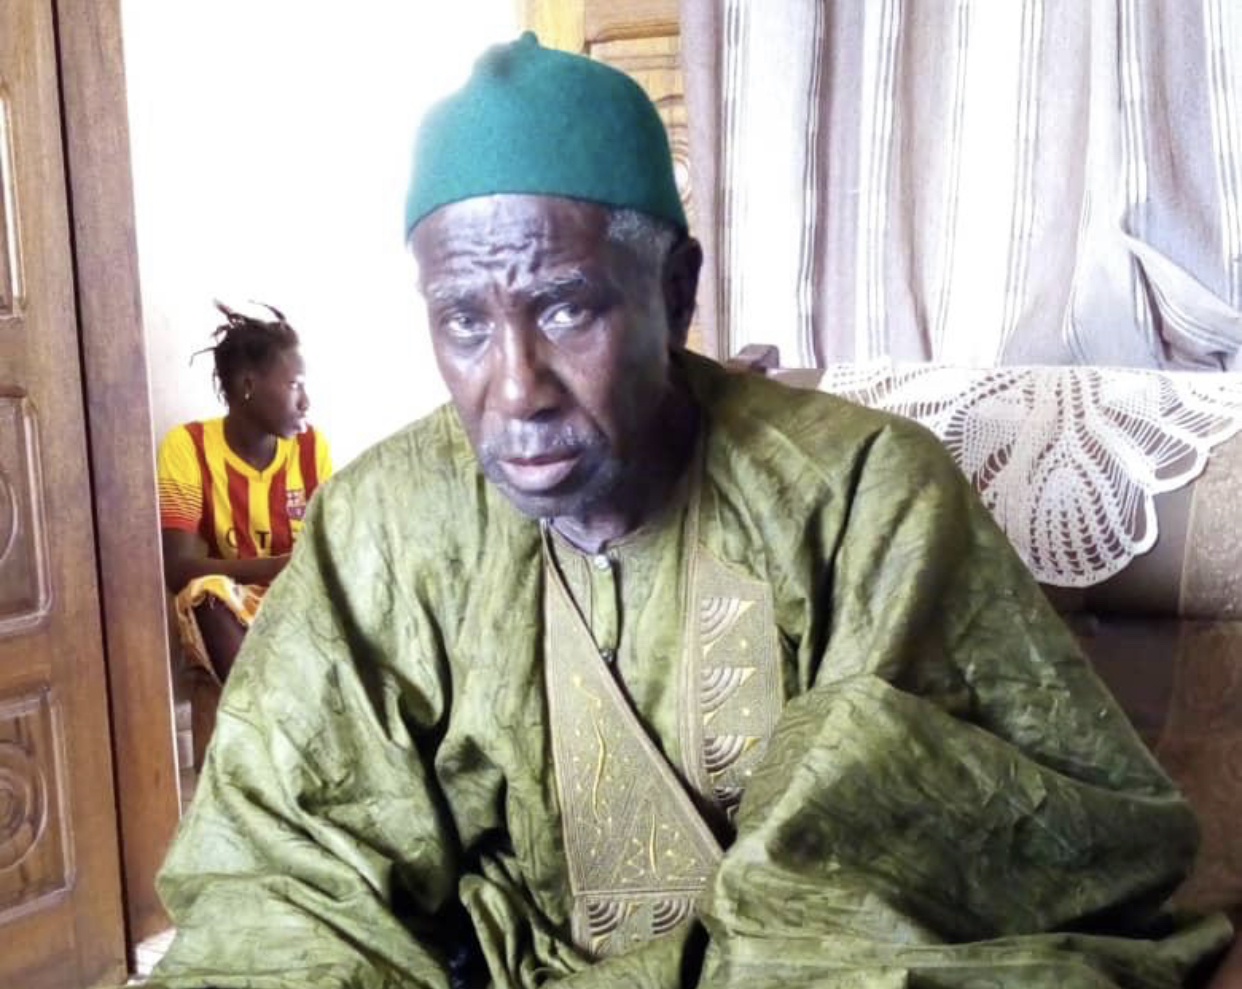 AVIS DE DISPARITION : Mamadou Moustapha Guèye a disparu.